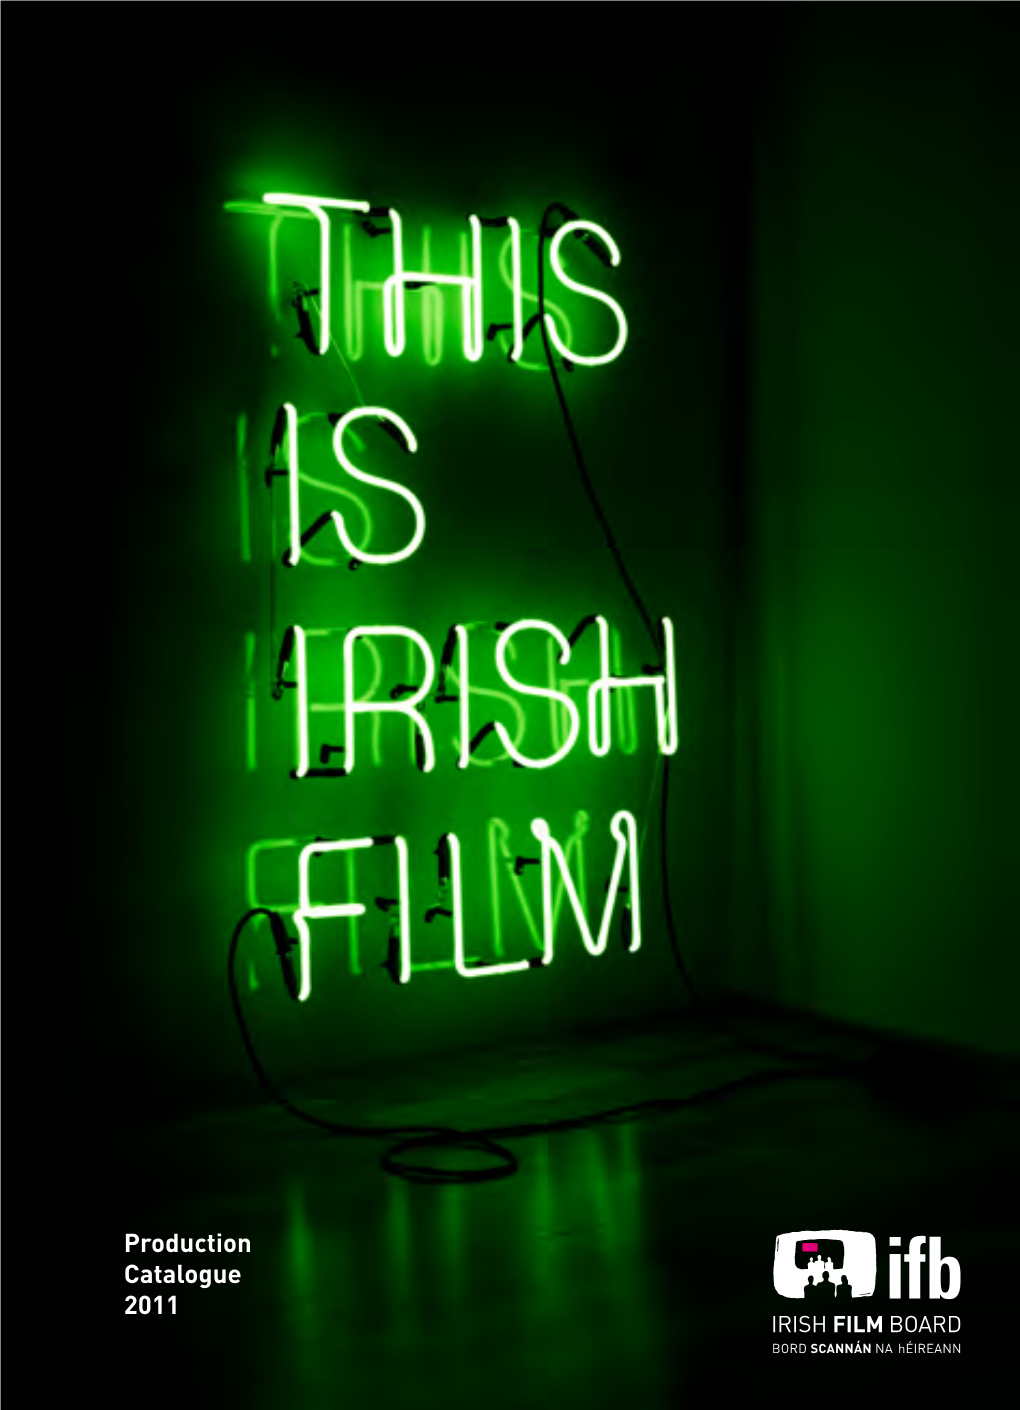 A Bout Bord Scannán Na Héireann / the Irish Film Board